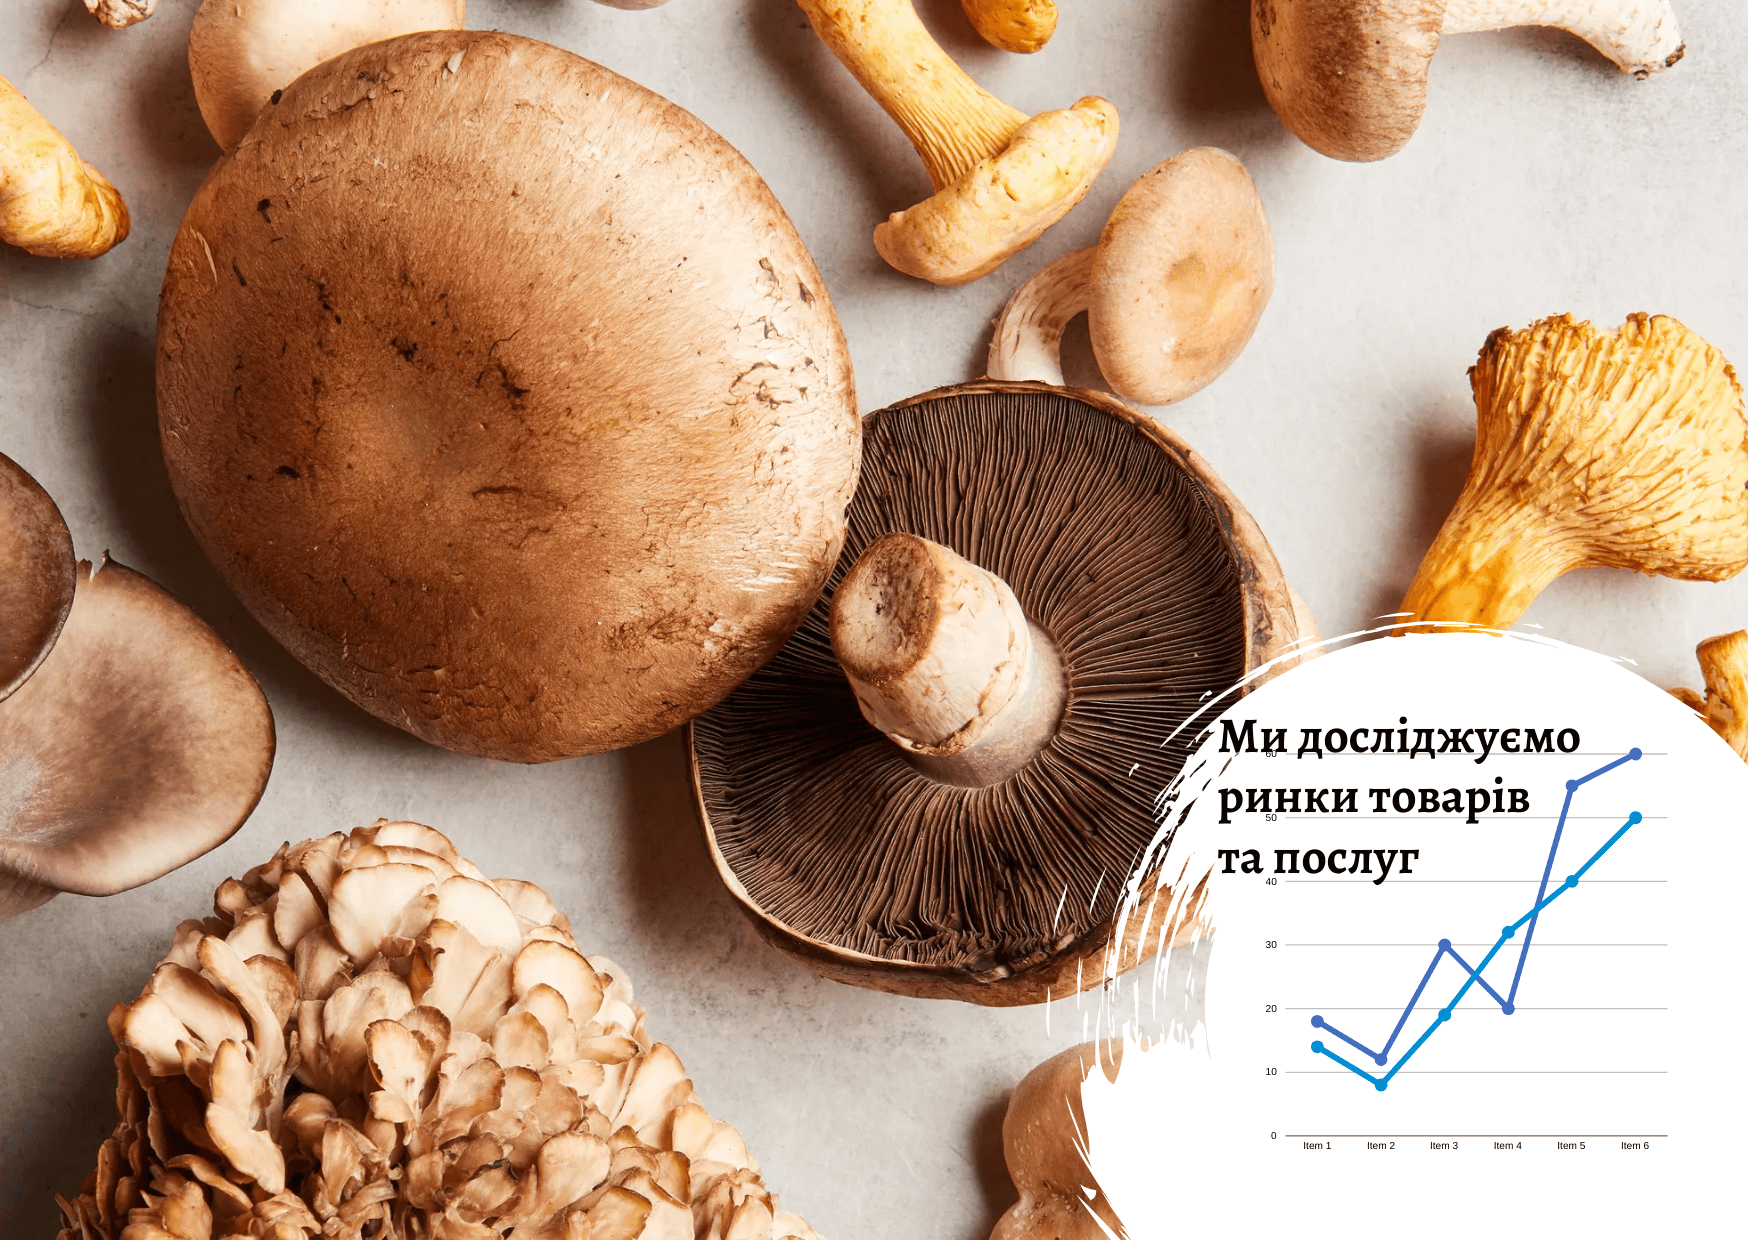 Mushroom market in Ukraine: main influencing factors